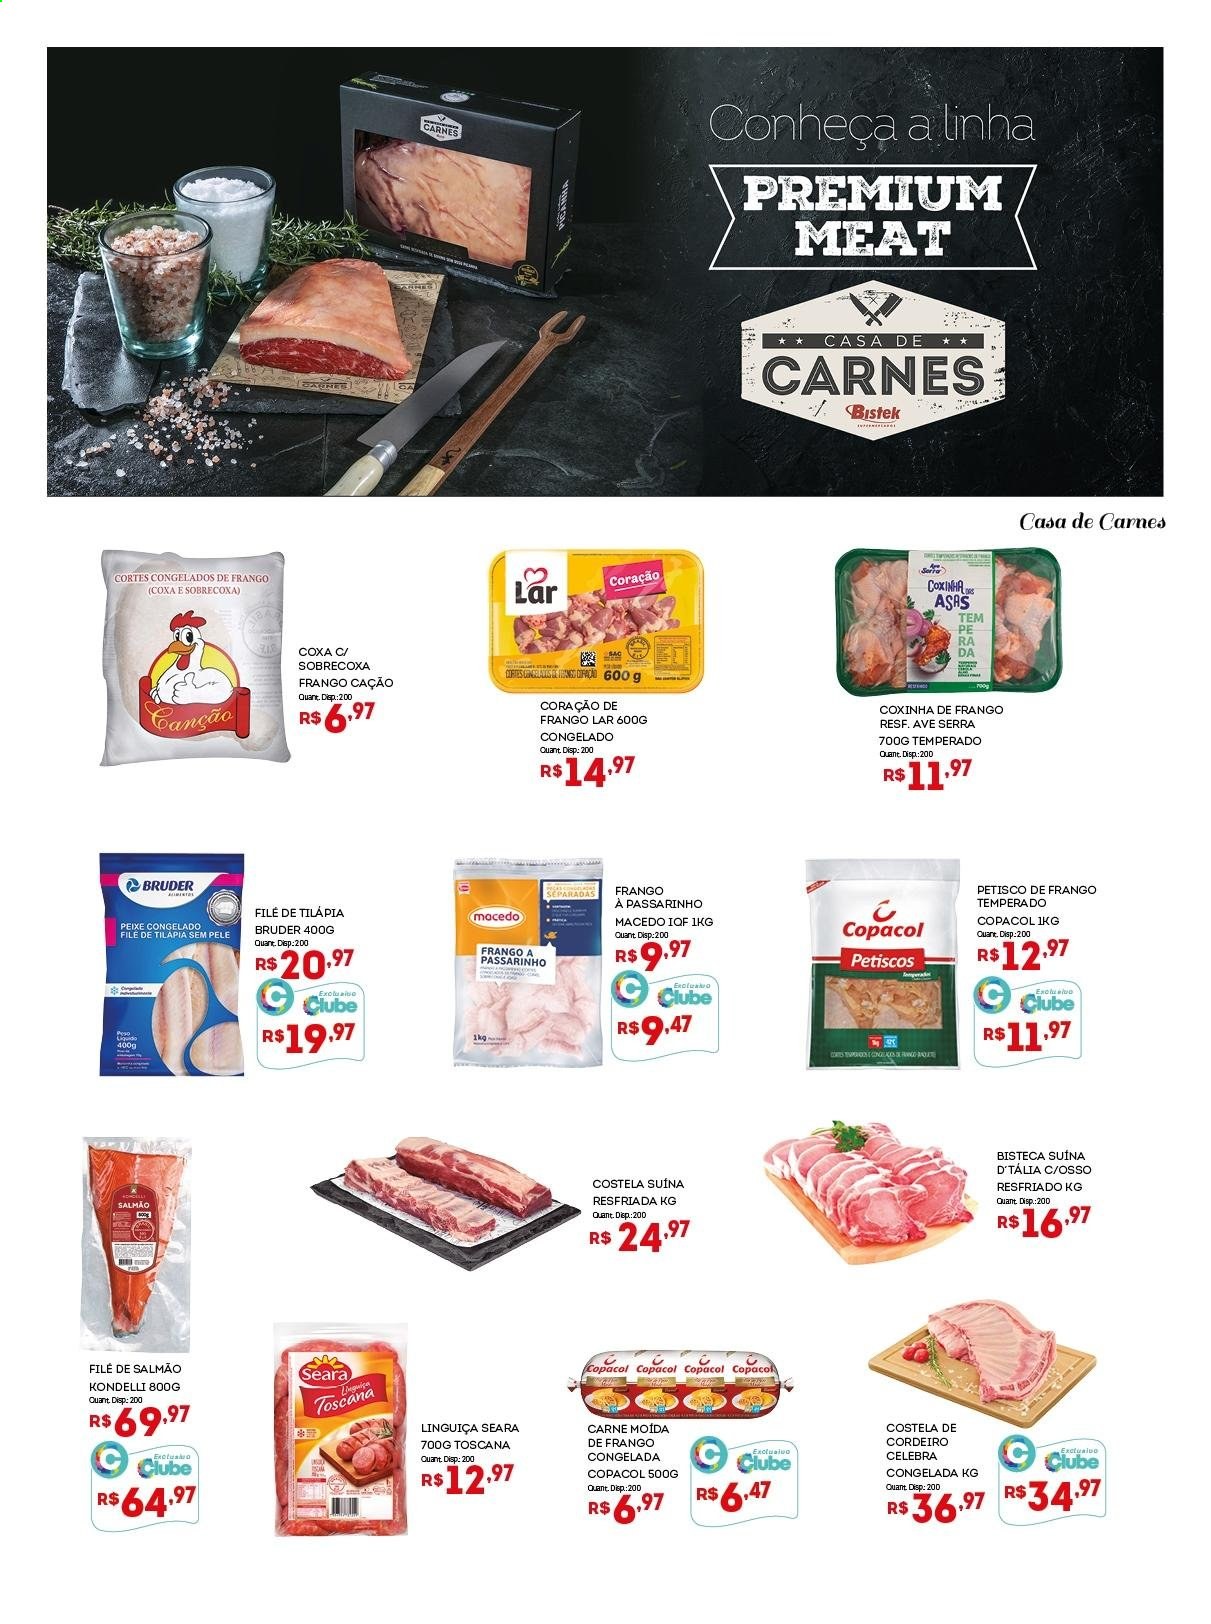 thumbnail - Folheto Bistek Supermercados - 12/05/2021 - 25/05/2021 - Produtos em promoção - carne, costela, costela suína, bisteca suina, sobrecoxa, carne moída, cordeiro, salmão, peixe, tilapia, frango à passarinho, linguiça. Página 9.